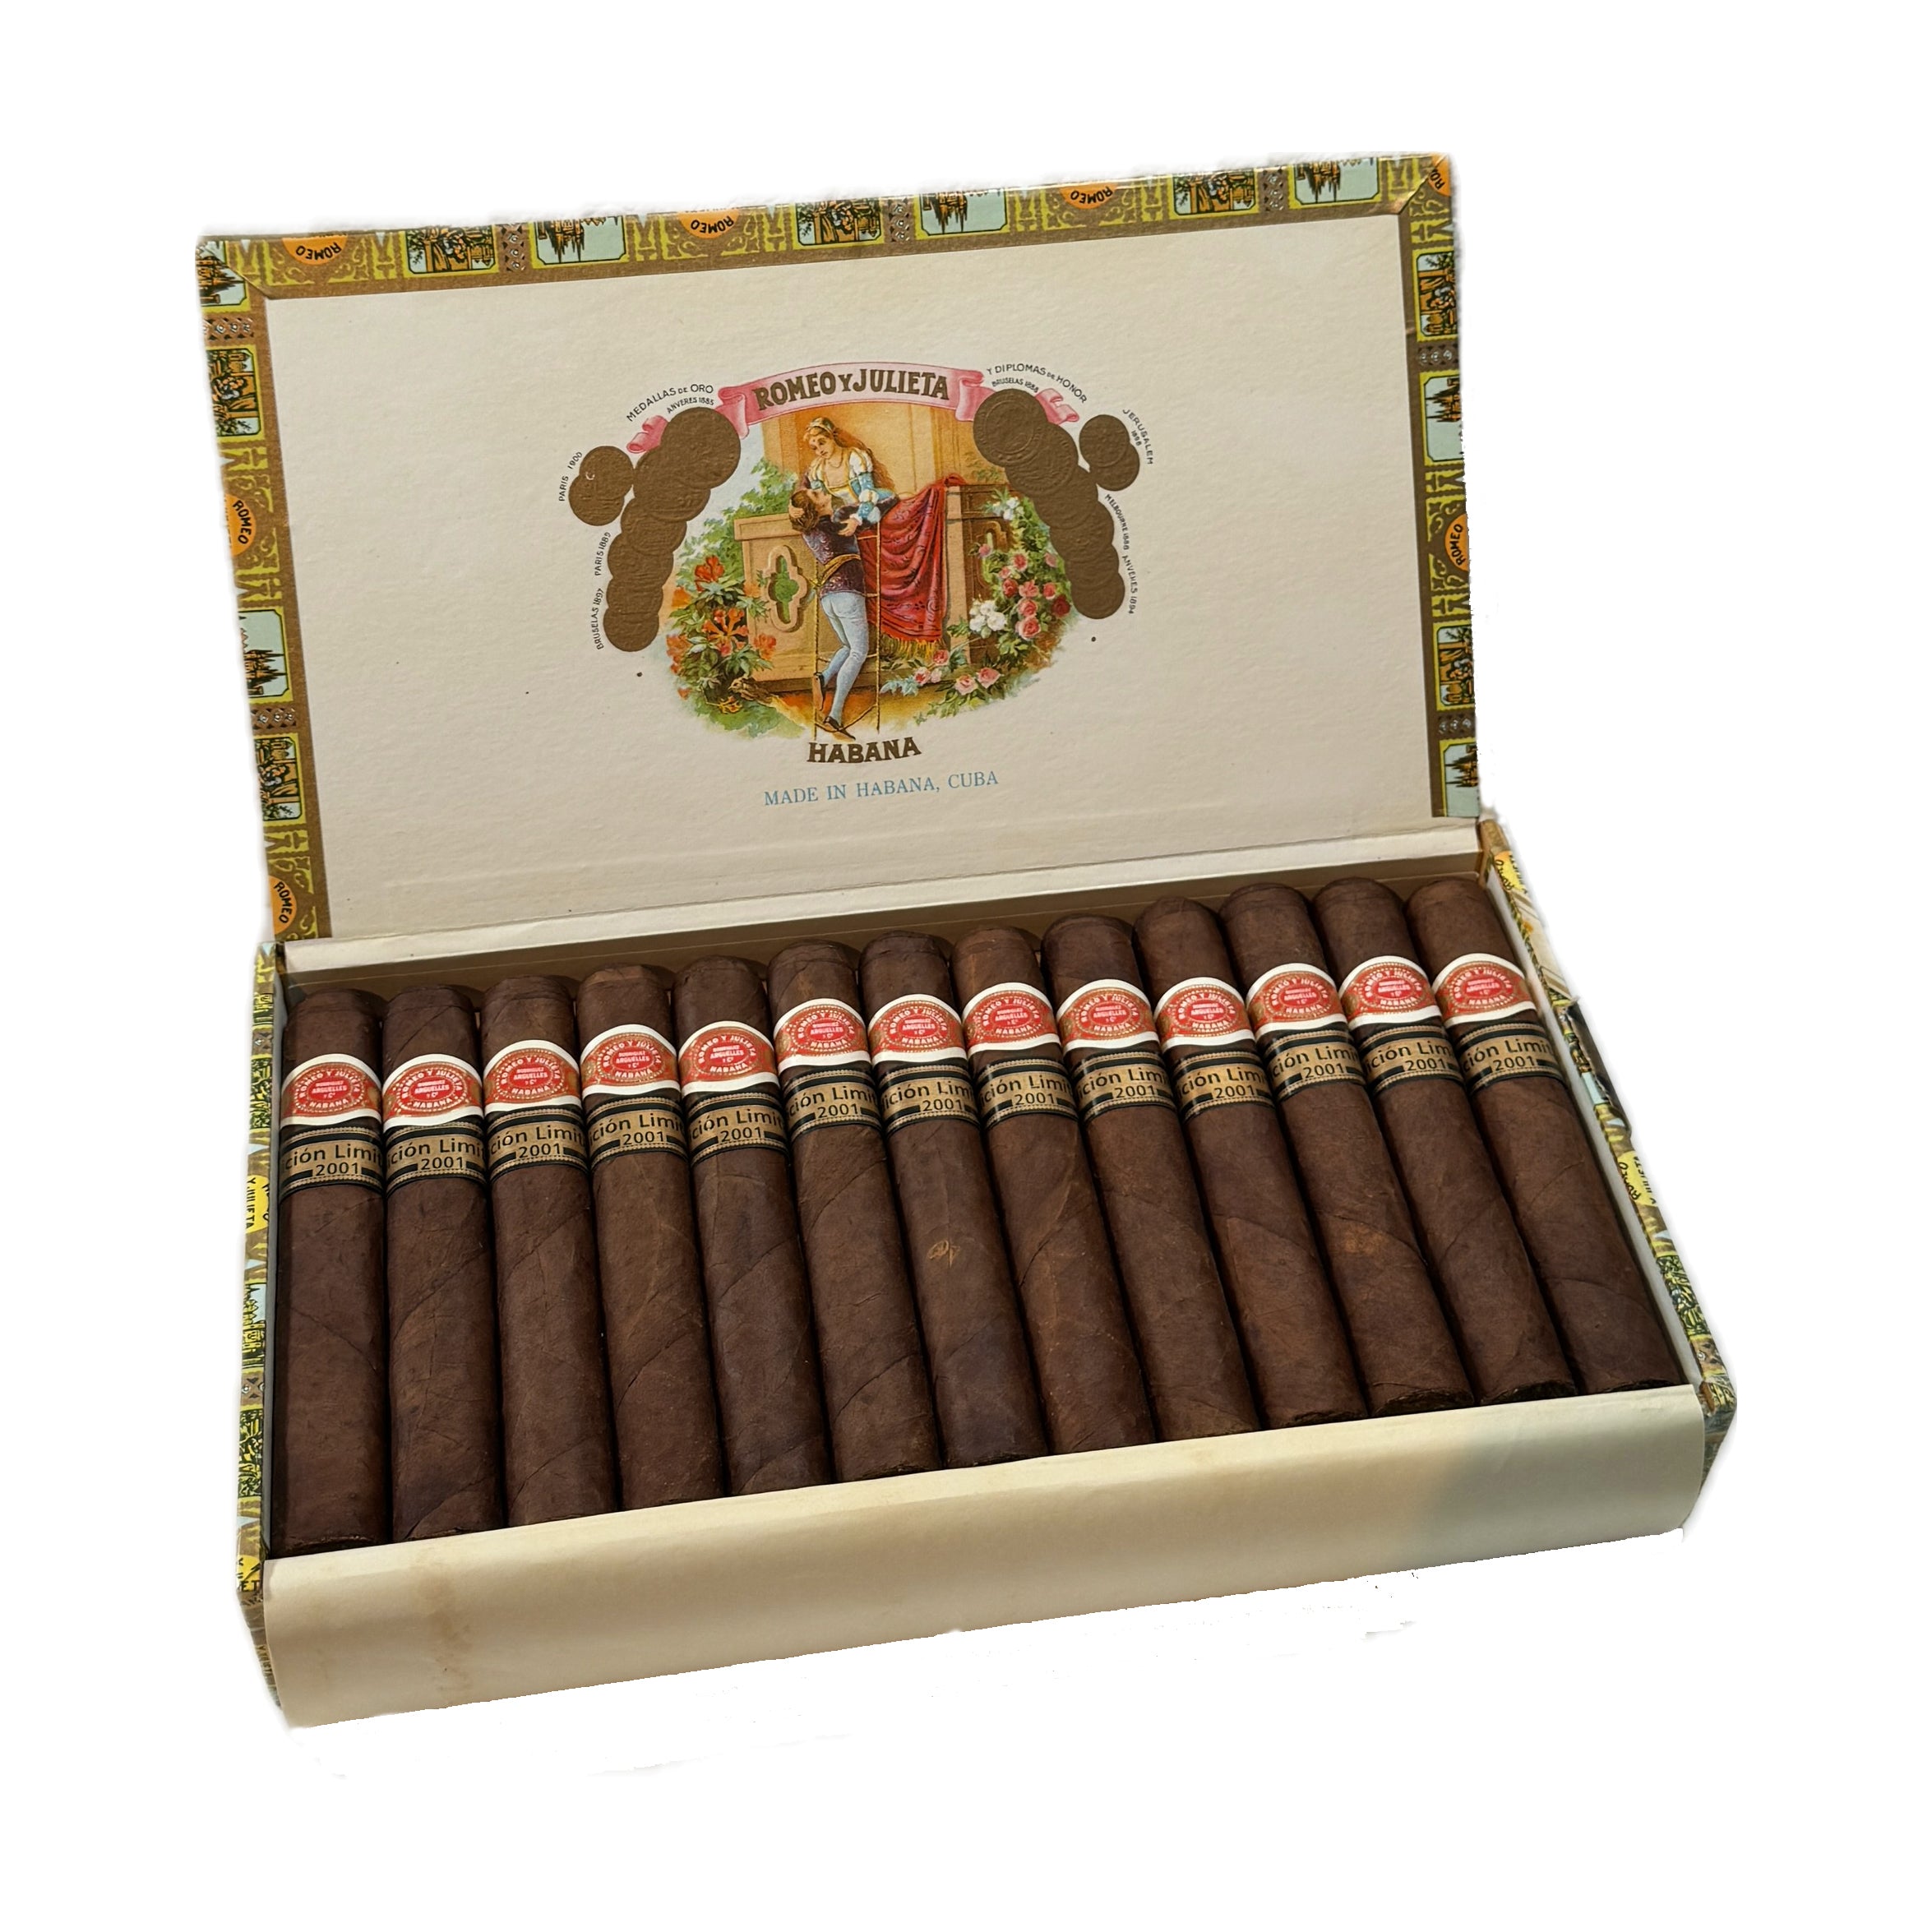 Romeo y Julieta Robustos Edición Limitada 2001 - Cuban Cigars Prices Online